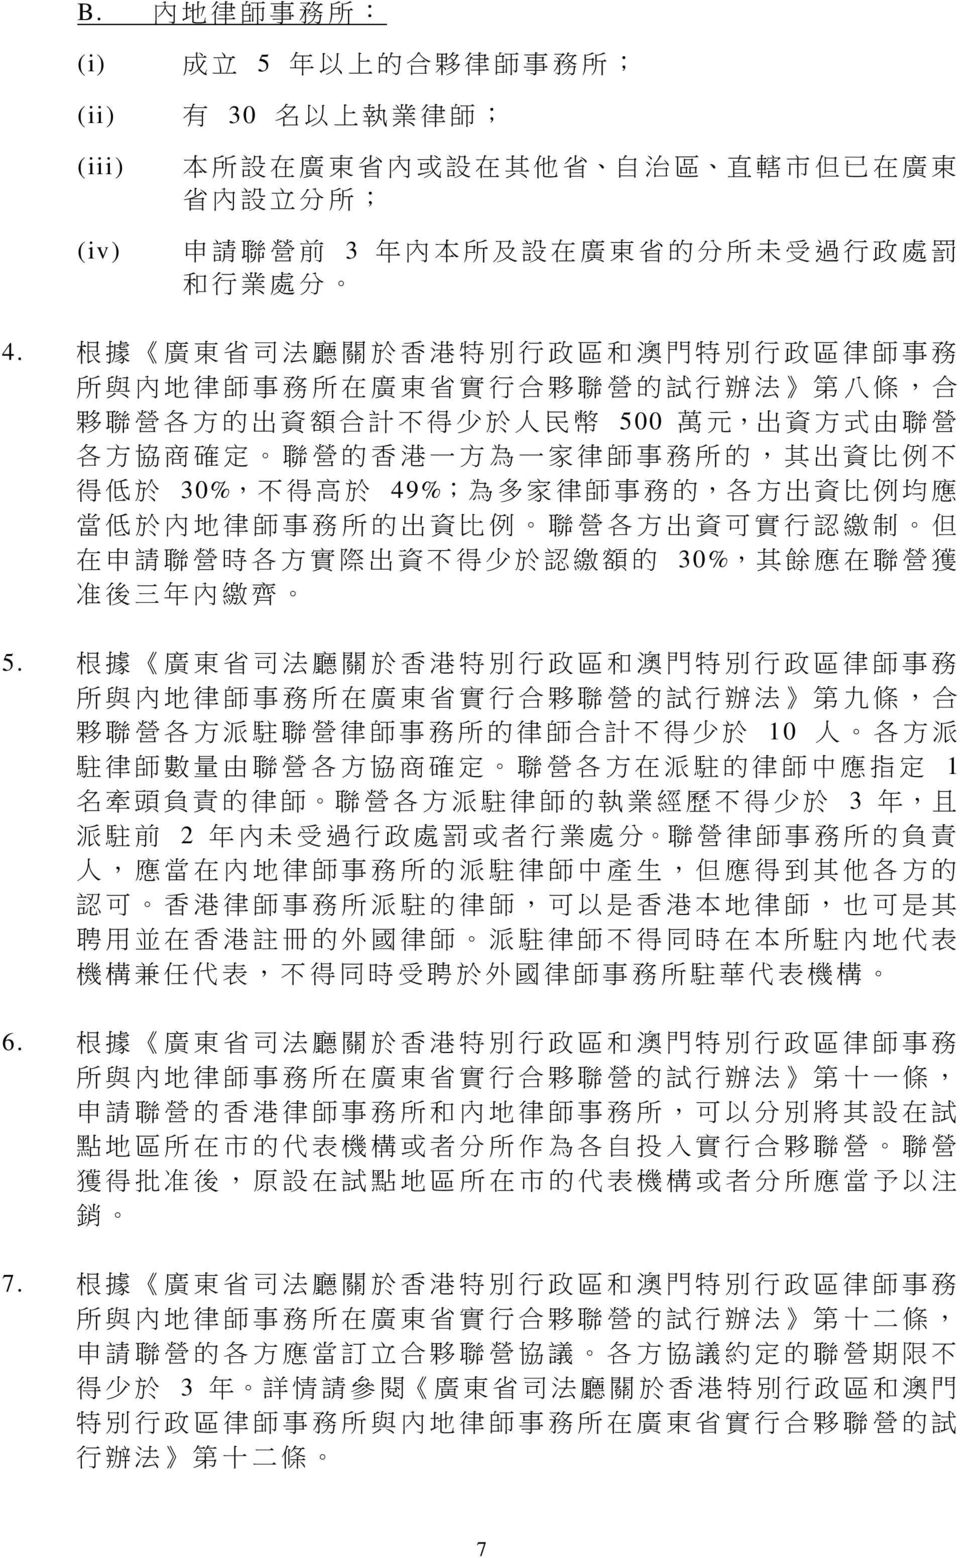 根 據 廣 東 省 司 法 廳 關 於 香 港 特 別 行 政 區 和 澳 門 特 別 行 政 區 律 師 事 務 所 與 內 地 律 師 事 務 所 在 廣 東 省 實 行 合 夥 聯 營 的 試 行 辦 法 第 八 條, 合 夥 聯 營 各 方 的 出 資 額 合 計 不 得 少 於 人 民 幣 500 萬 元, 出 資 方 式 由 聯 營 各 方 協 商 確 定 聯 營 的 香 港 一 方